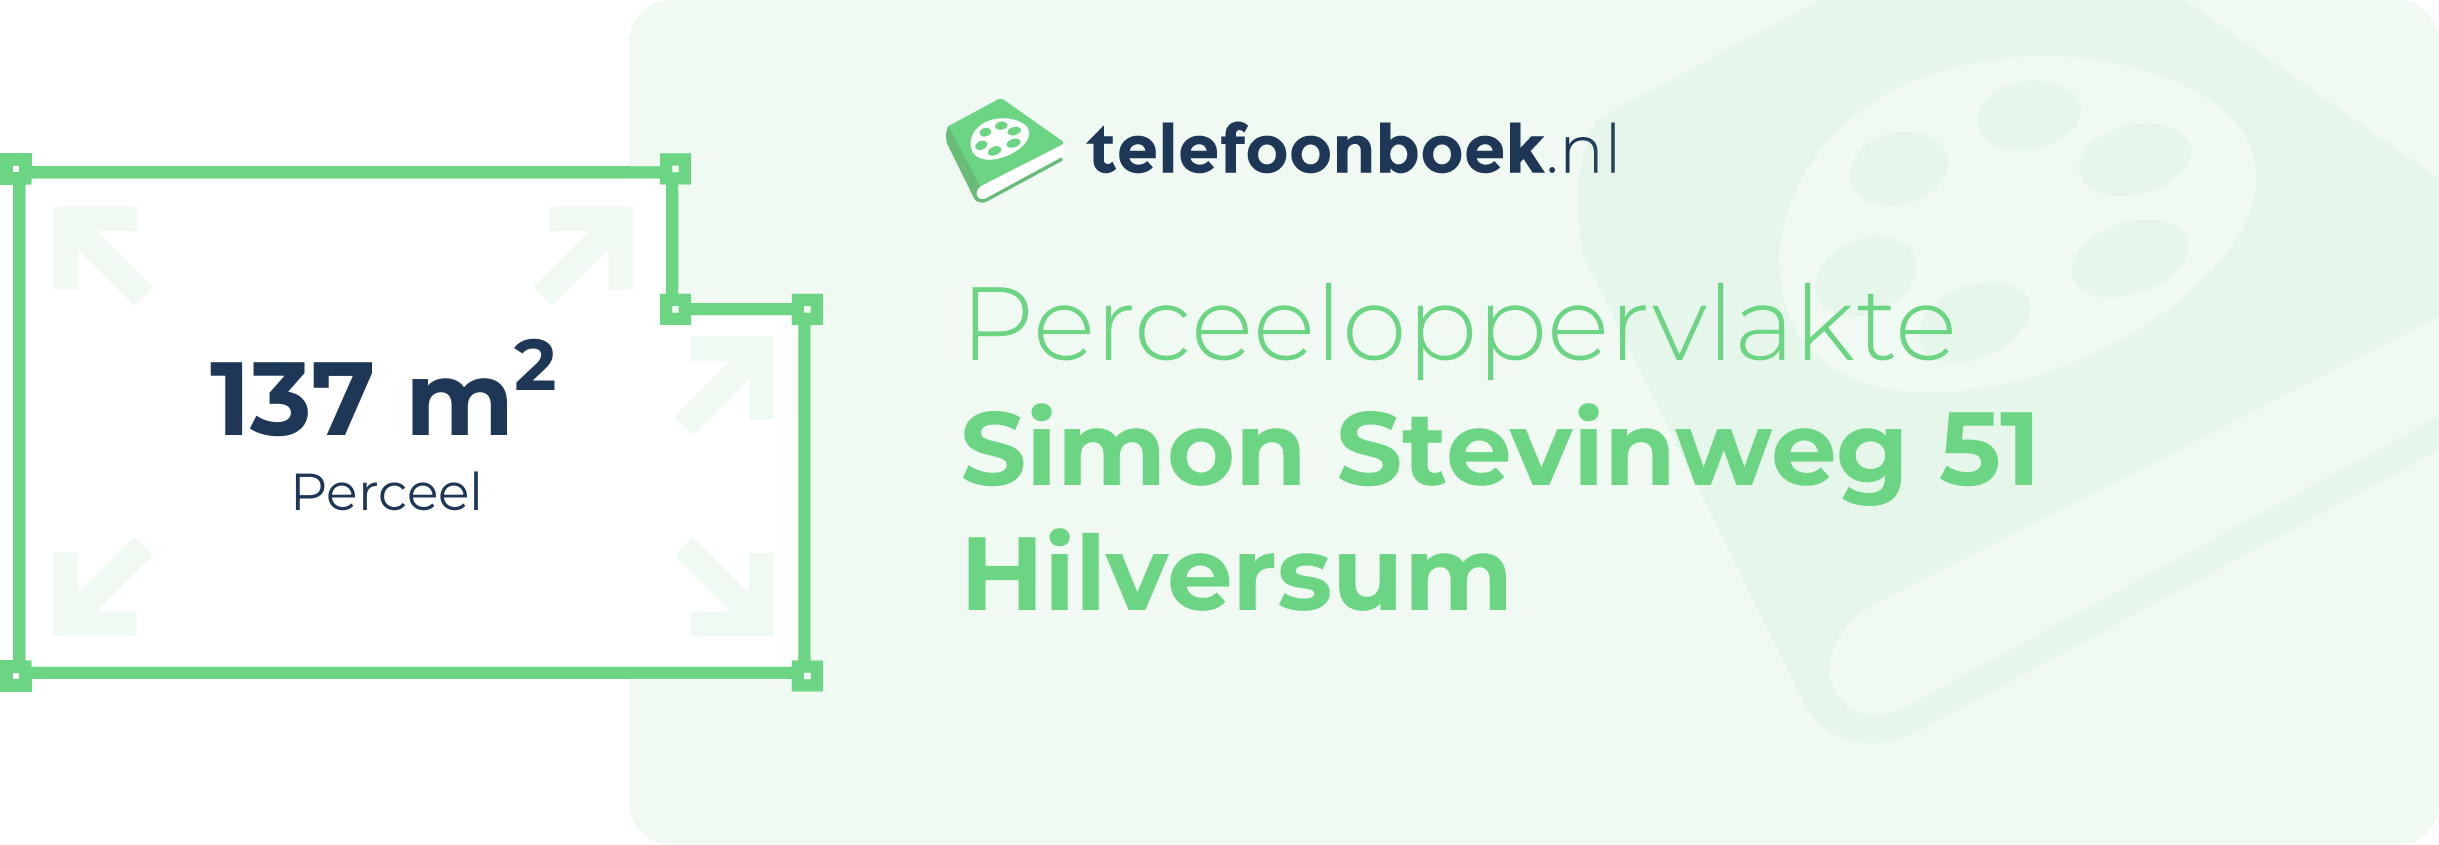 Perceeloppervlakte Simon Stevinweg 51 Hilversum